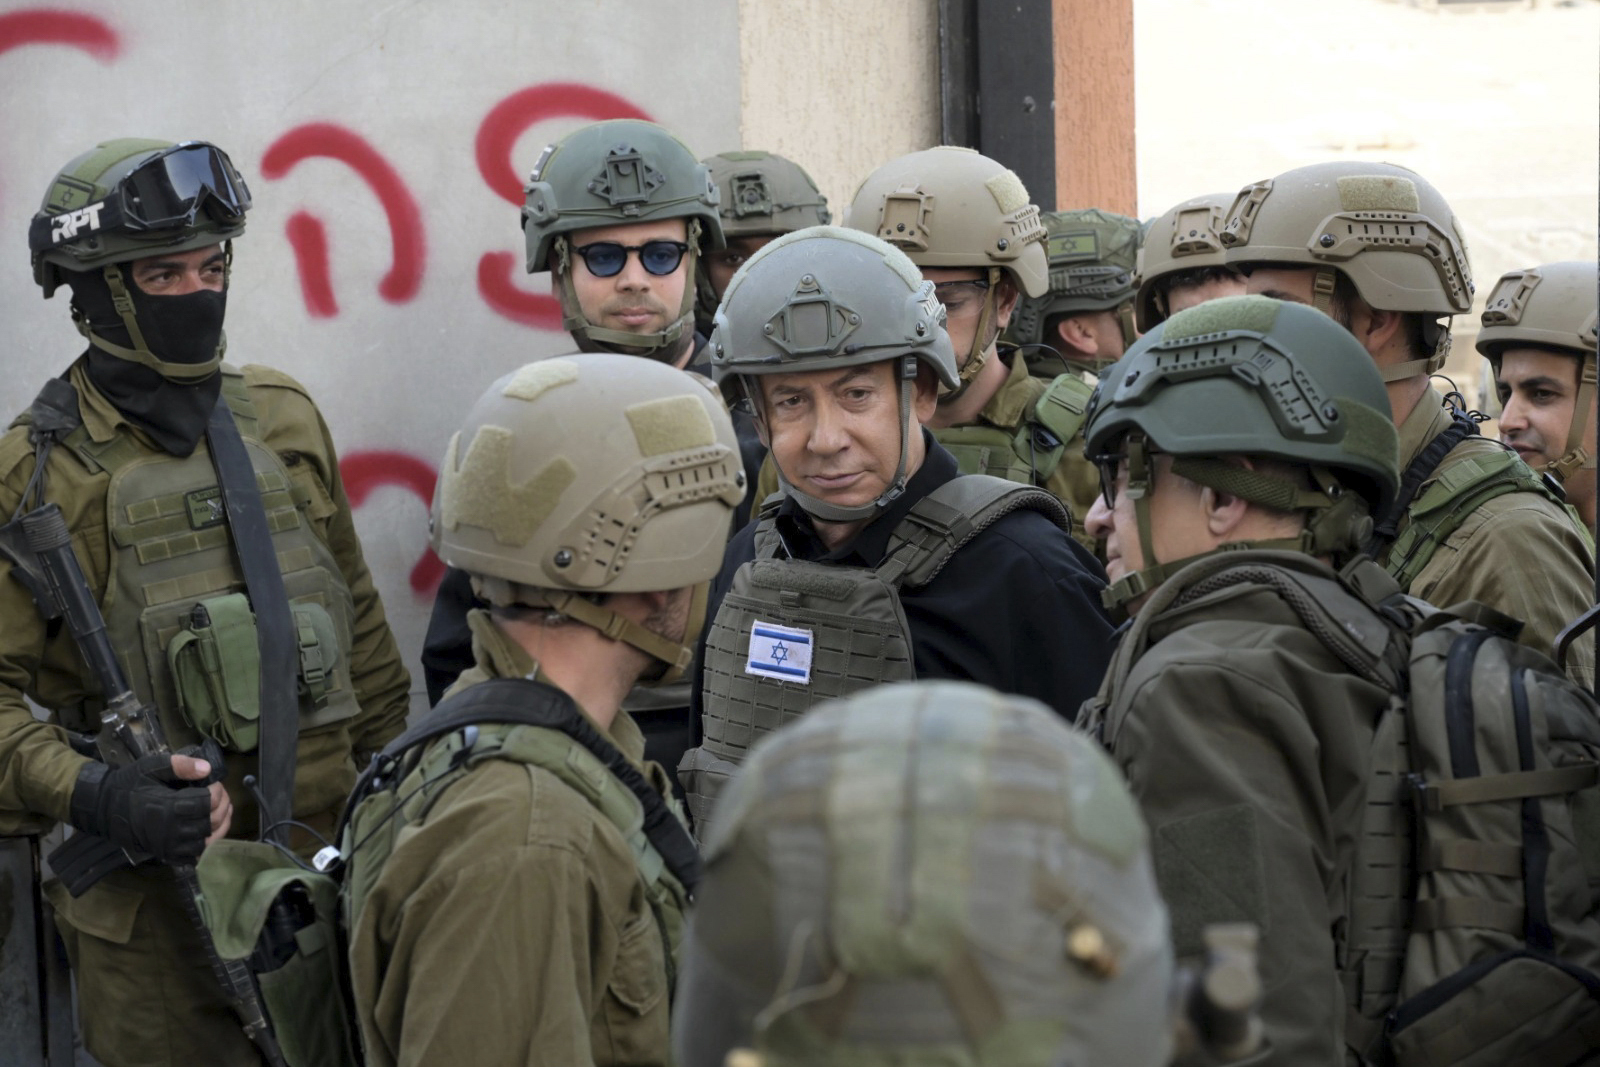 Nuevo revés judicial para Netanyahu, atrapado entre la guerra y el descontento social